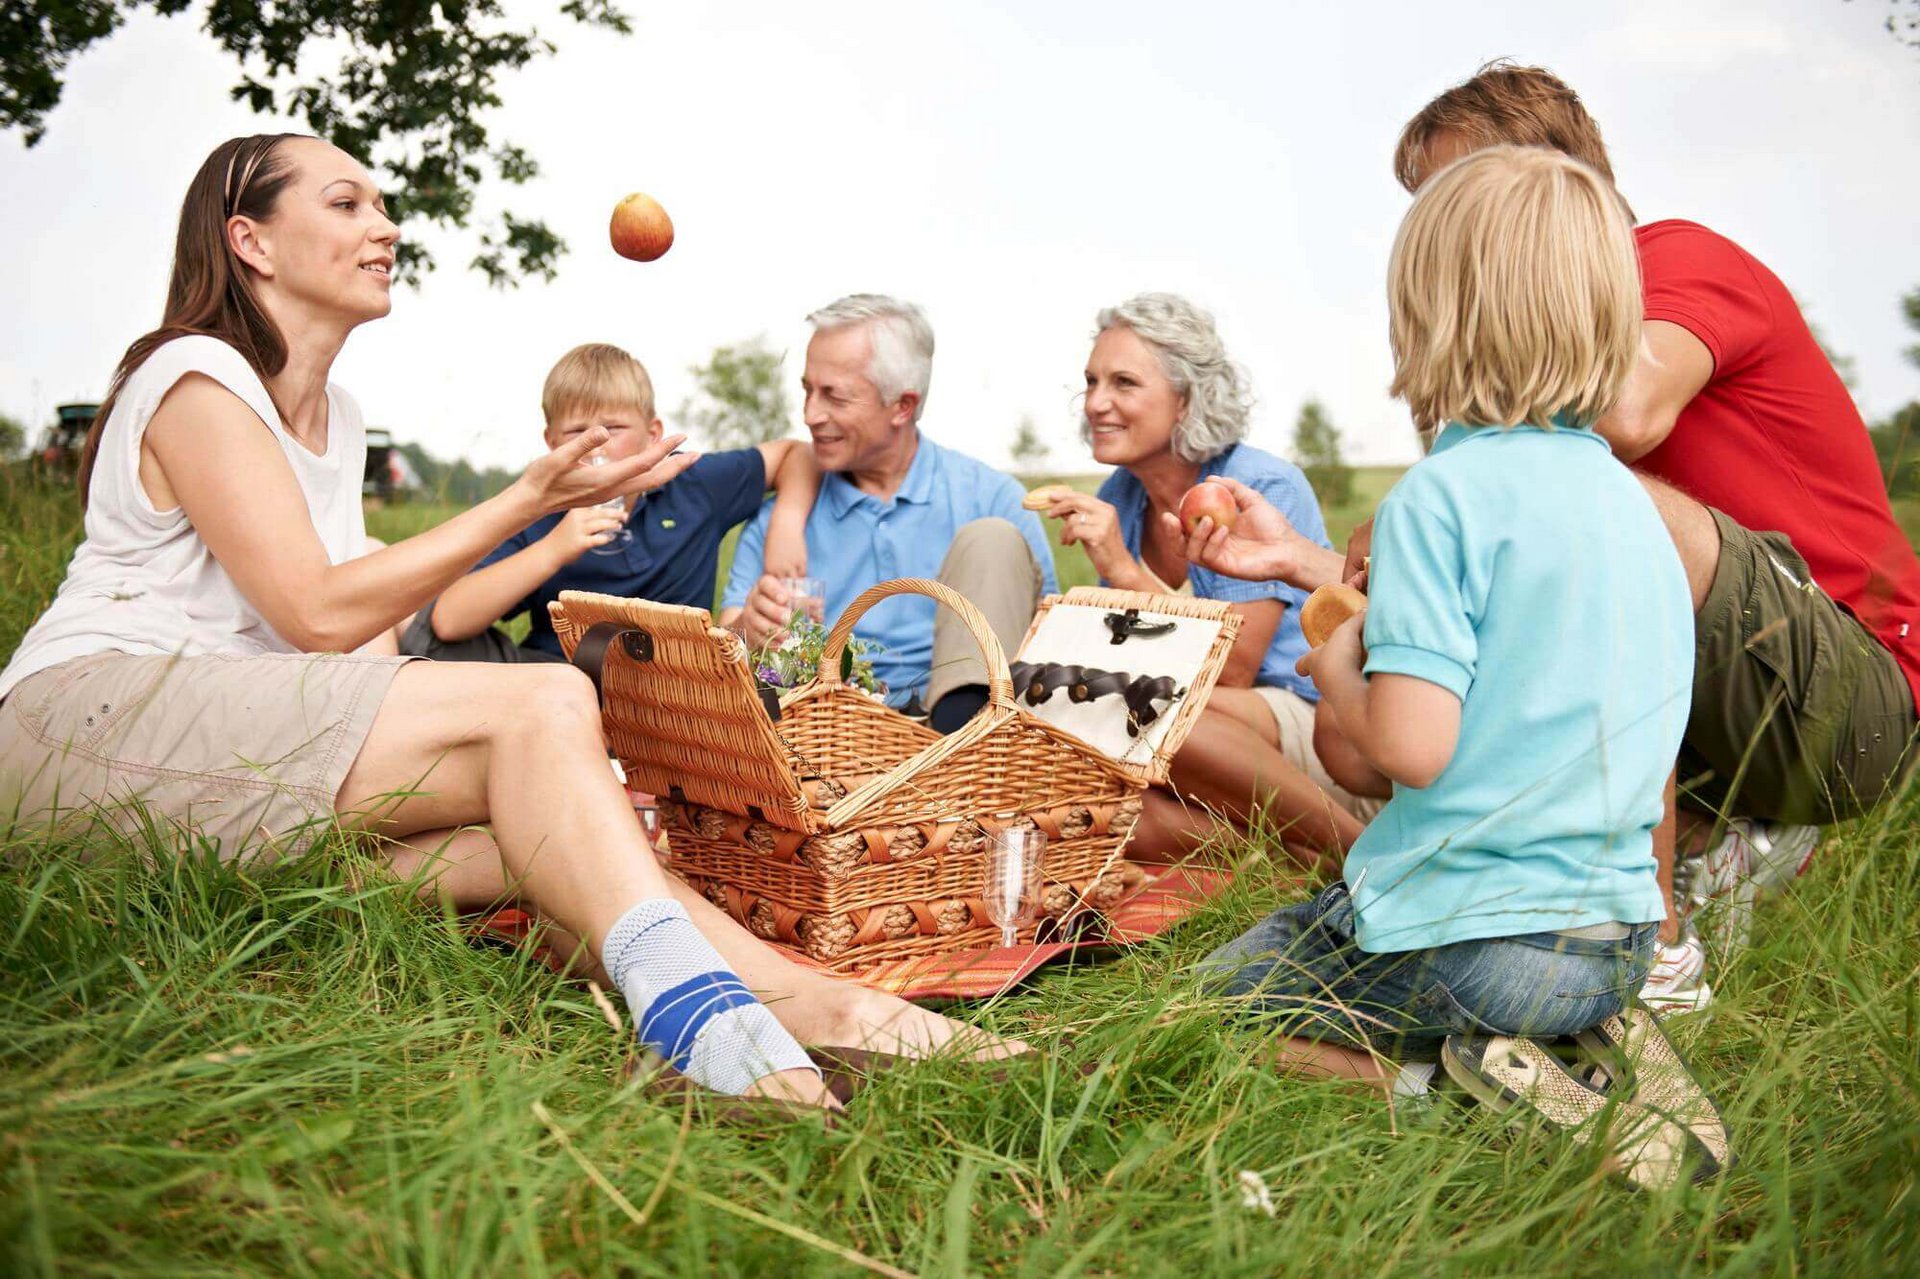 Eine Großfamilie von sechs Personen sitzt auf einer Wiese. In der Mitte befindet sich ein Picknickkorb. Die Frau an der linken Seite wirft einen Apfel in die Höhe. Sie trägt eine stabilisierende Sprunggelenksbandage von Bauerfeind am rechten Knie.  